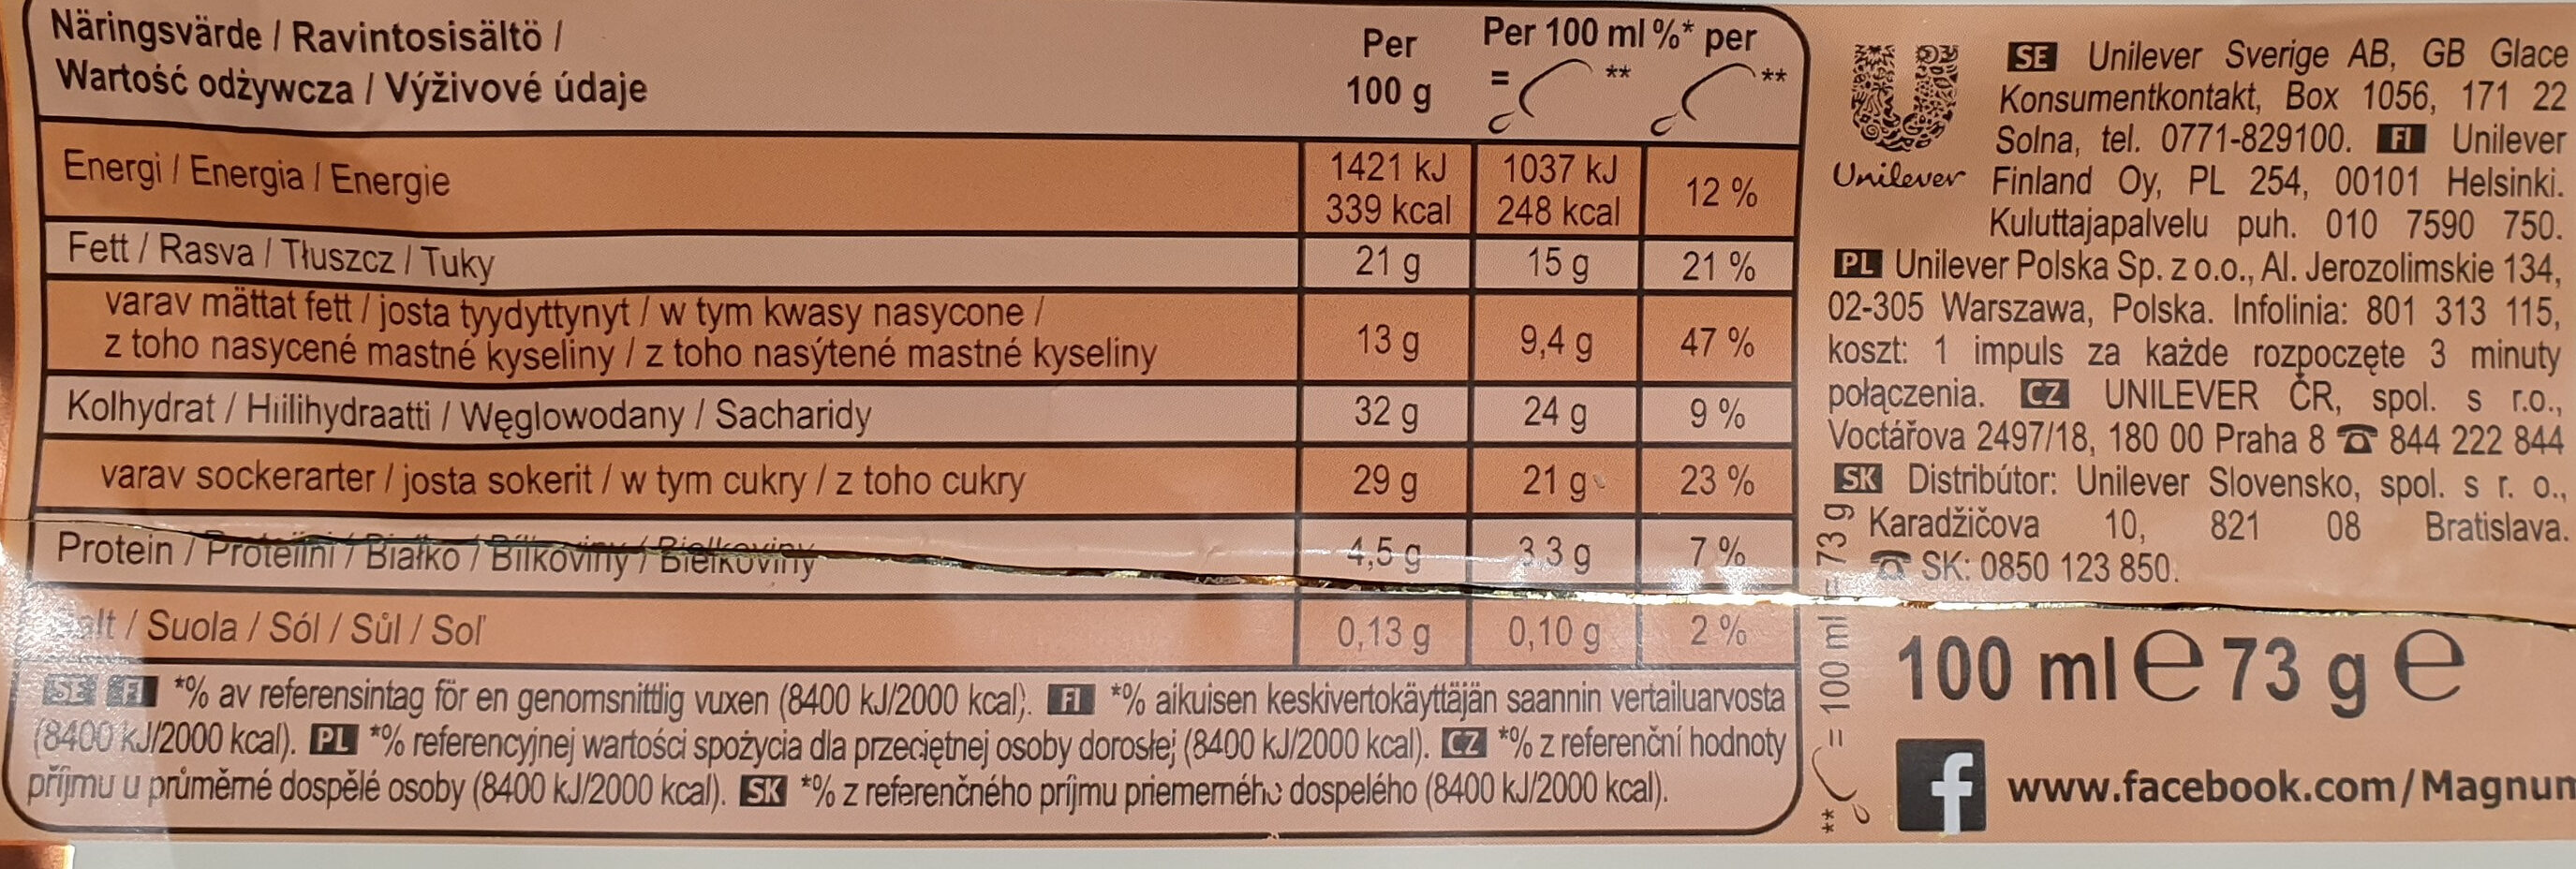 Lody z wanilią z Madagaskaru w białej czekoladzie (28%) z migdałami (5%) - Wartości odżywcze